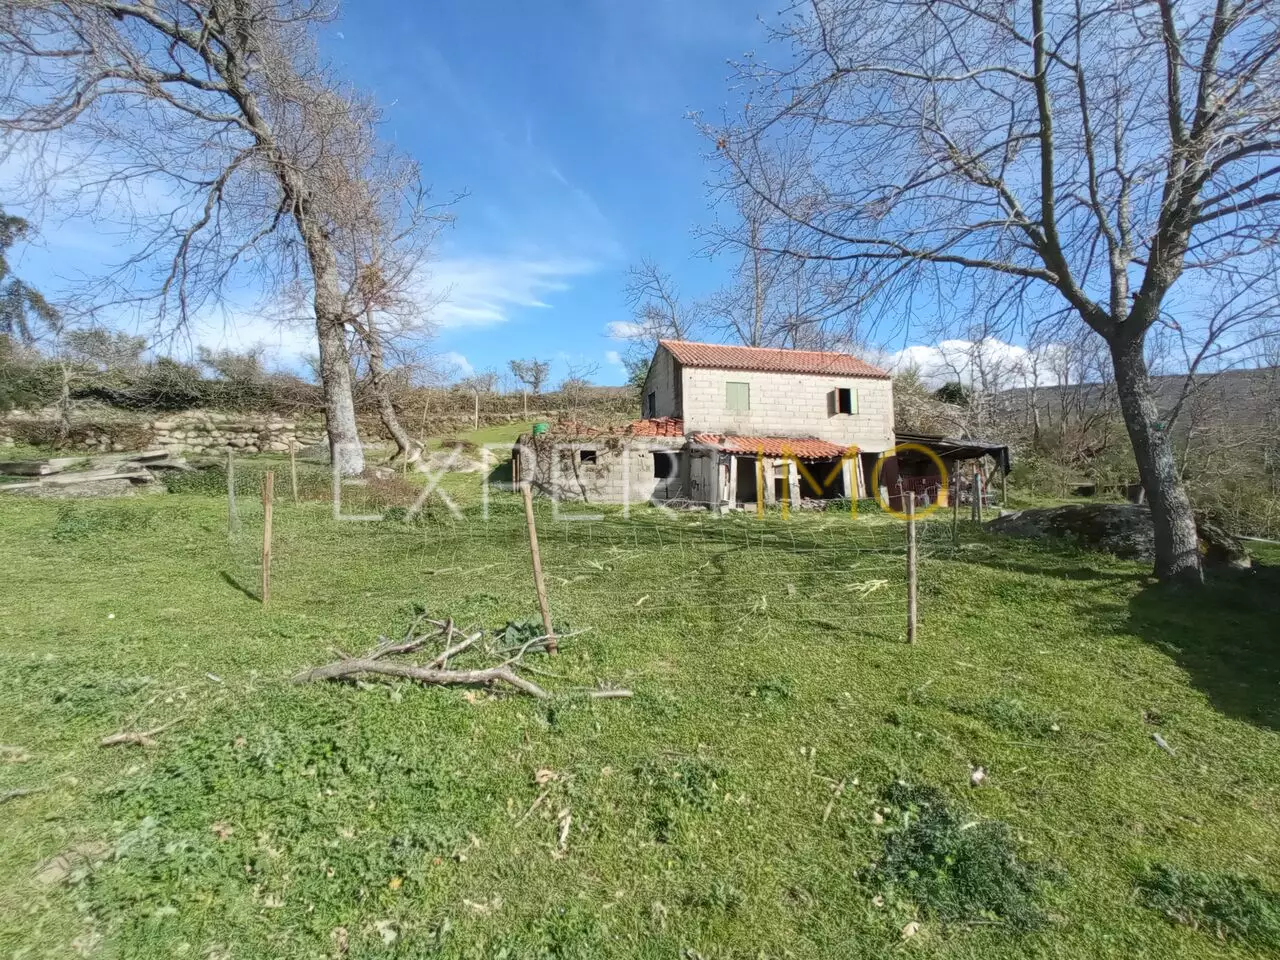 (5)QUINTA RURAL 2,269380 HECTARES, típica quinta portuguesa com casa para reconstrução, pastos verdejantes e árvores de fruto